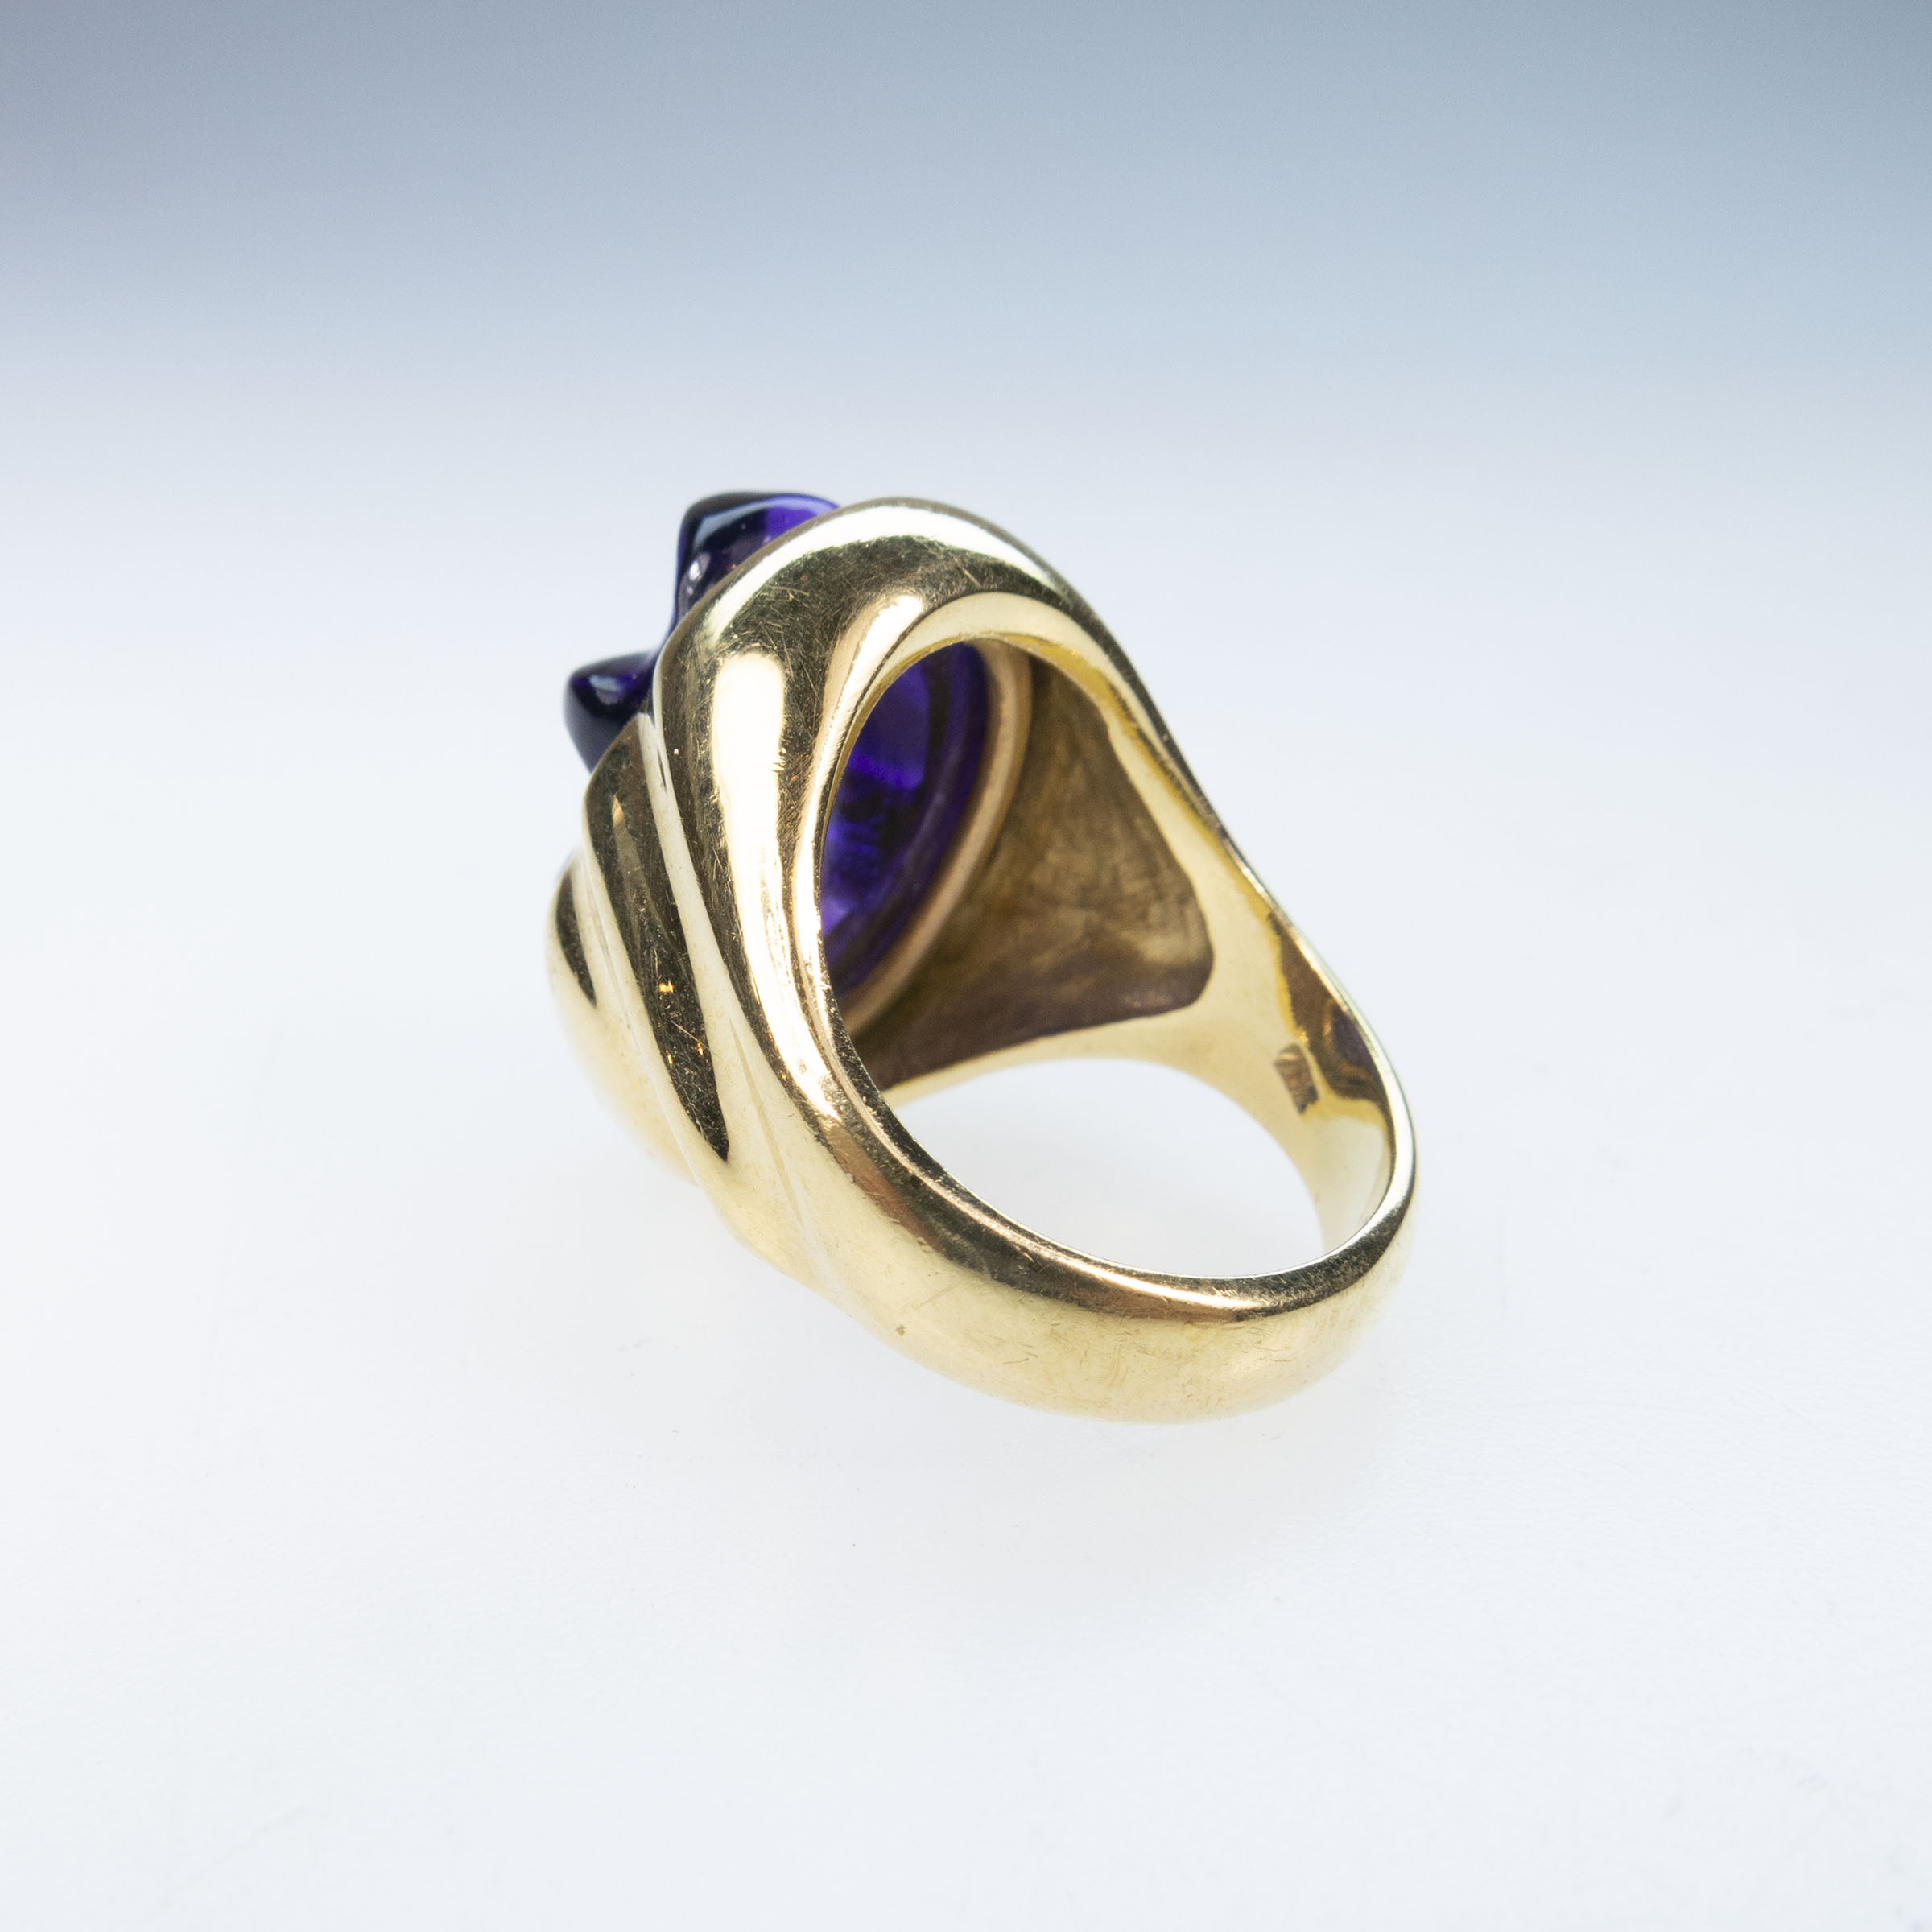 Secrett's 18k Yellow Gold Ring